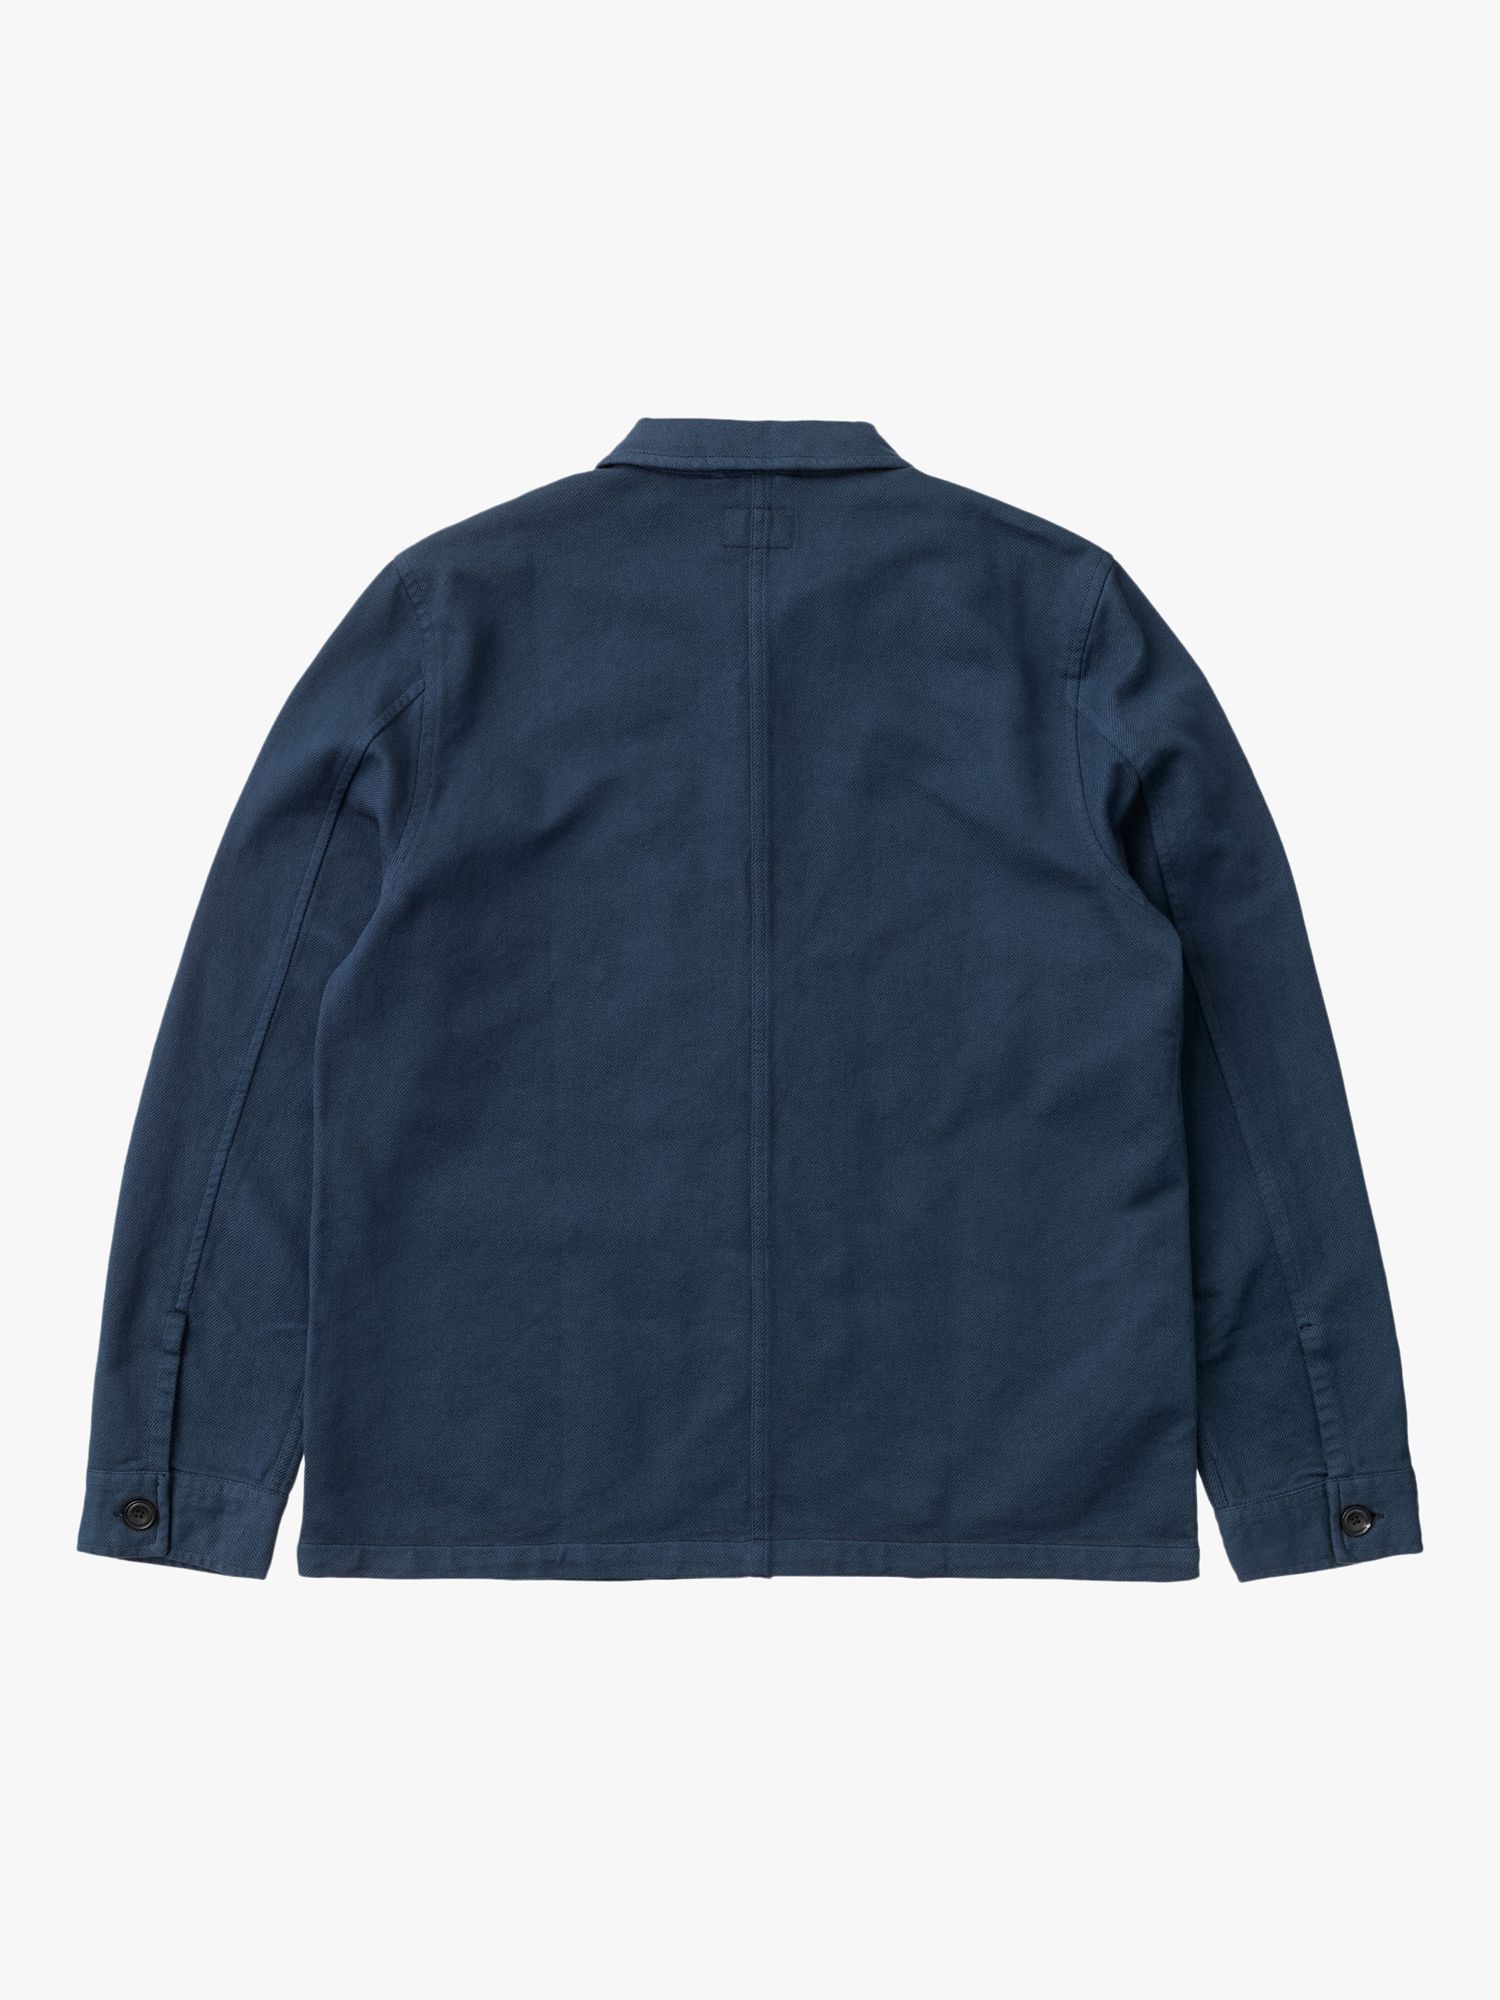 Nudie Jeans Barney Worker Jacket, Denim Blue at John Lewis & Partners